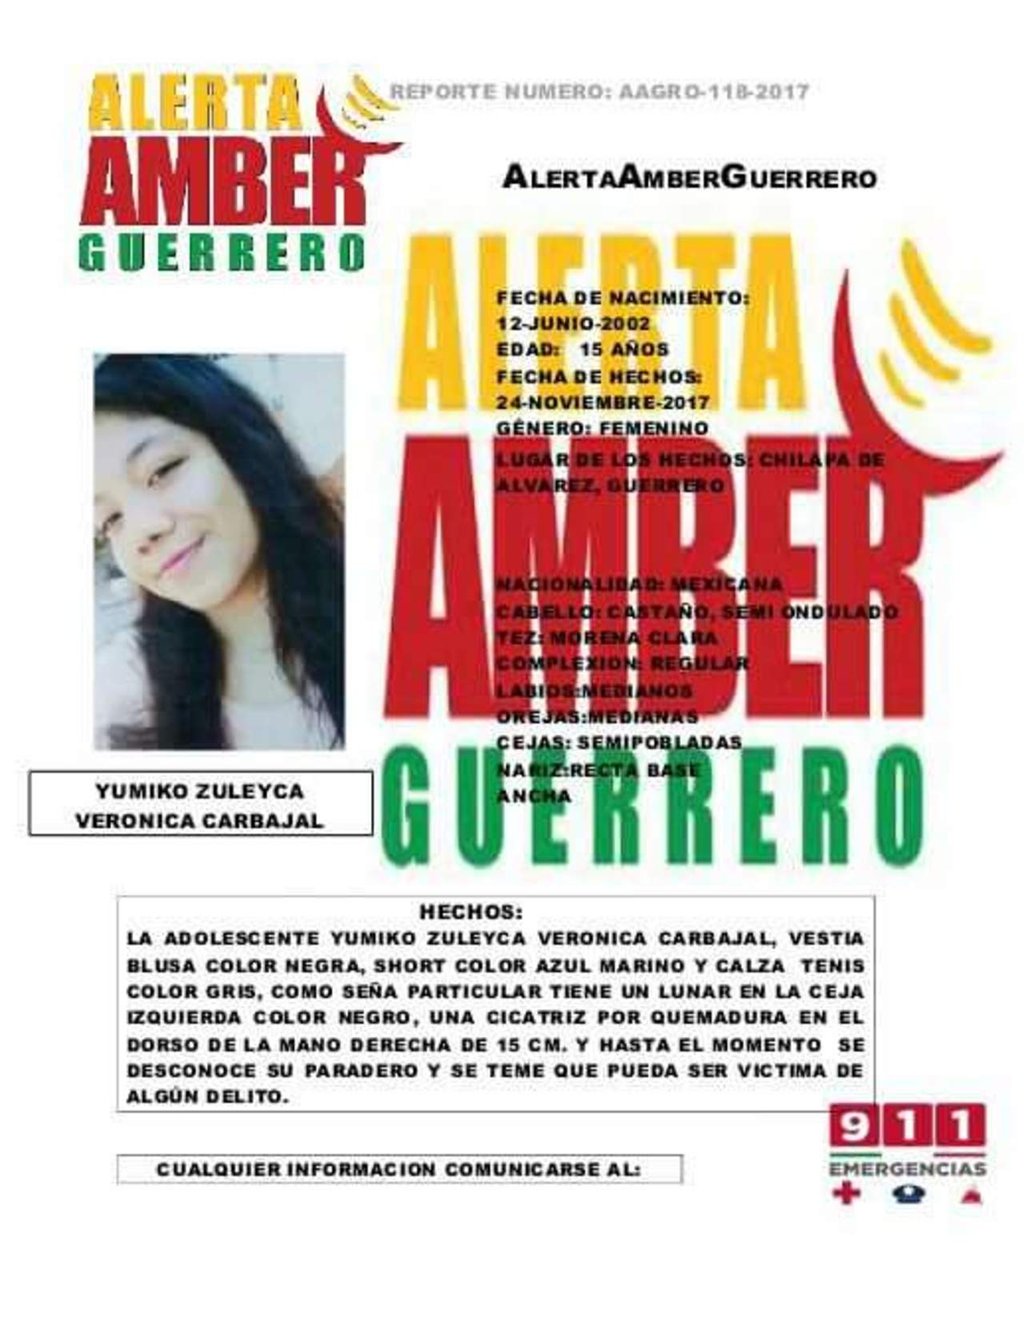 Desaparece Yumiko Zuleyca, menor de edad, en Guerrero